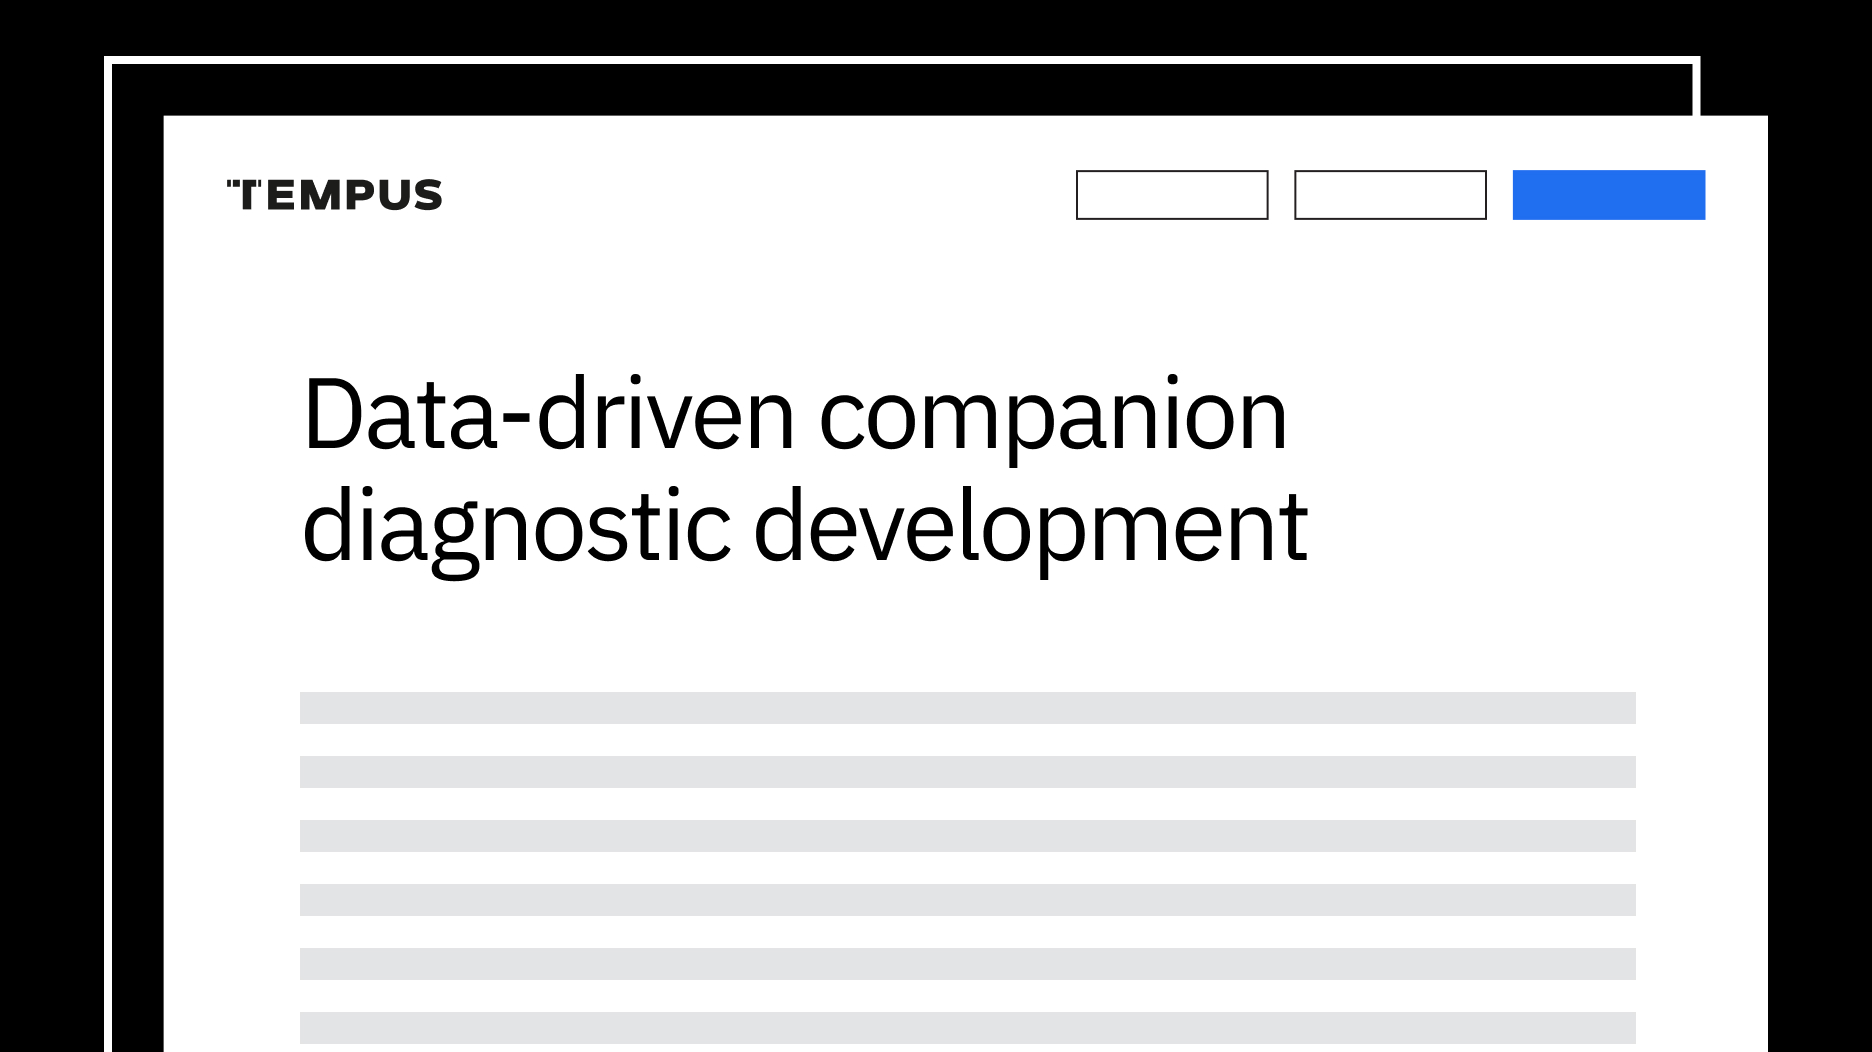 Data-driven companion diagnostic development